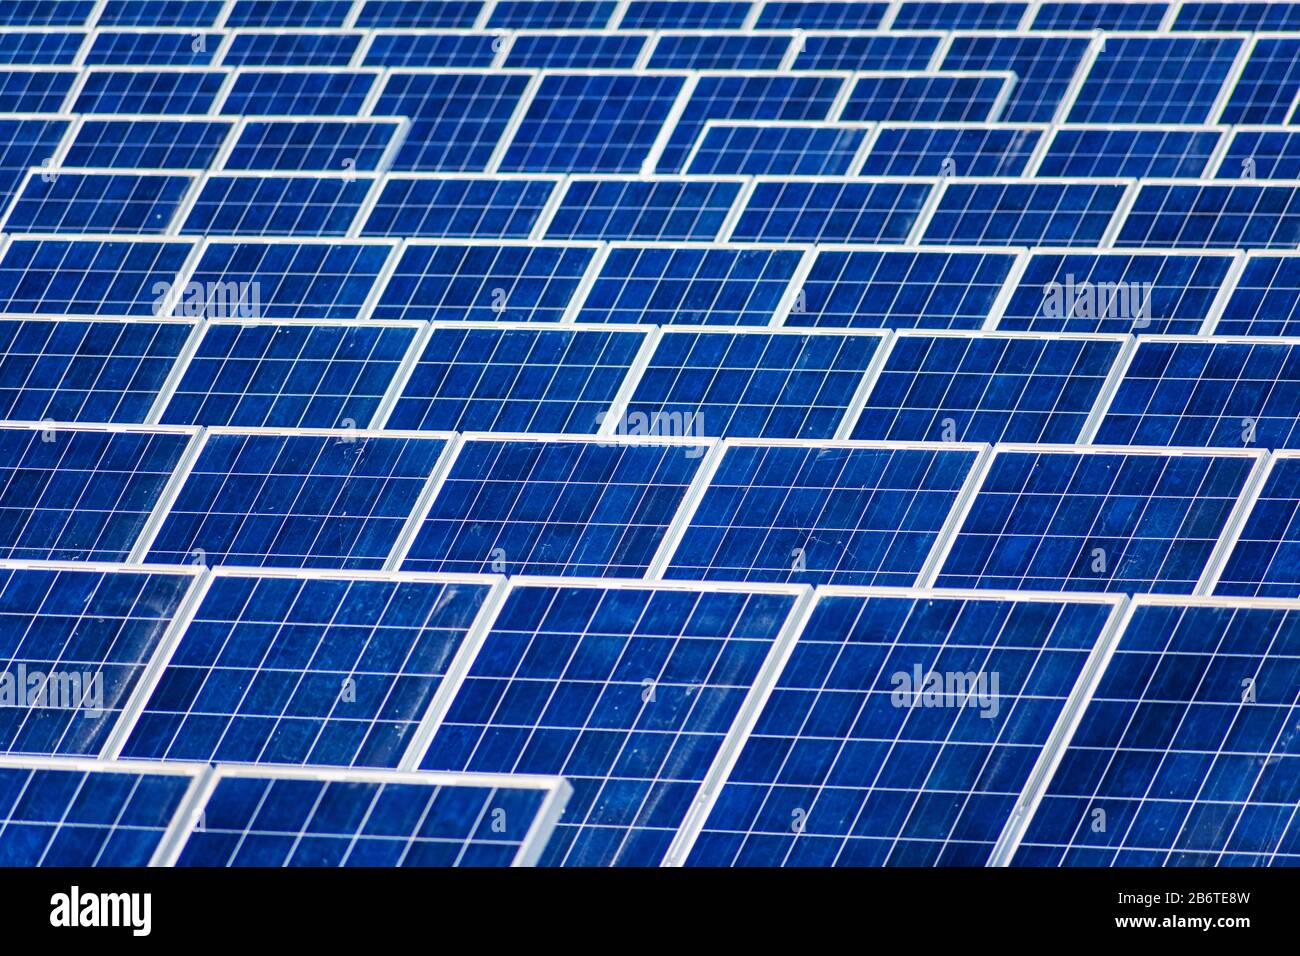 Staubige Oberfläche von Solarmodulen erfordert Wartung und Reinigung. Elektrische Solaranlage und Anlage. Stockfoto